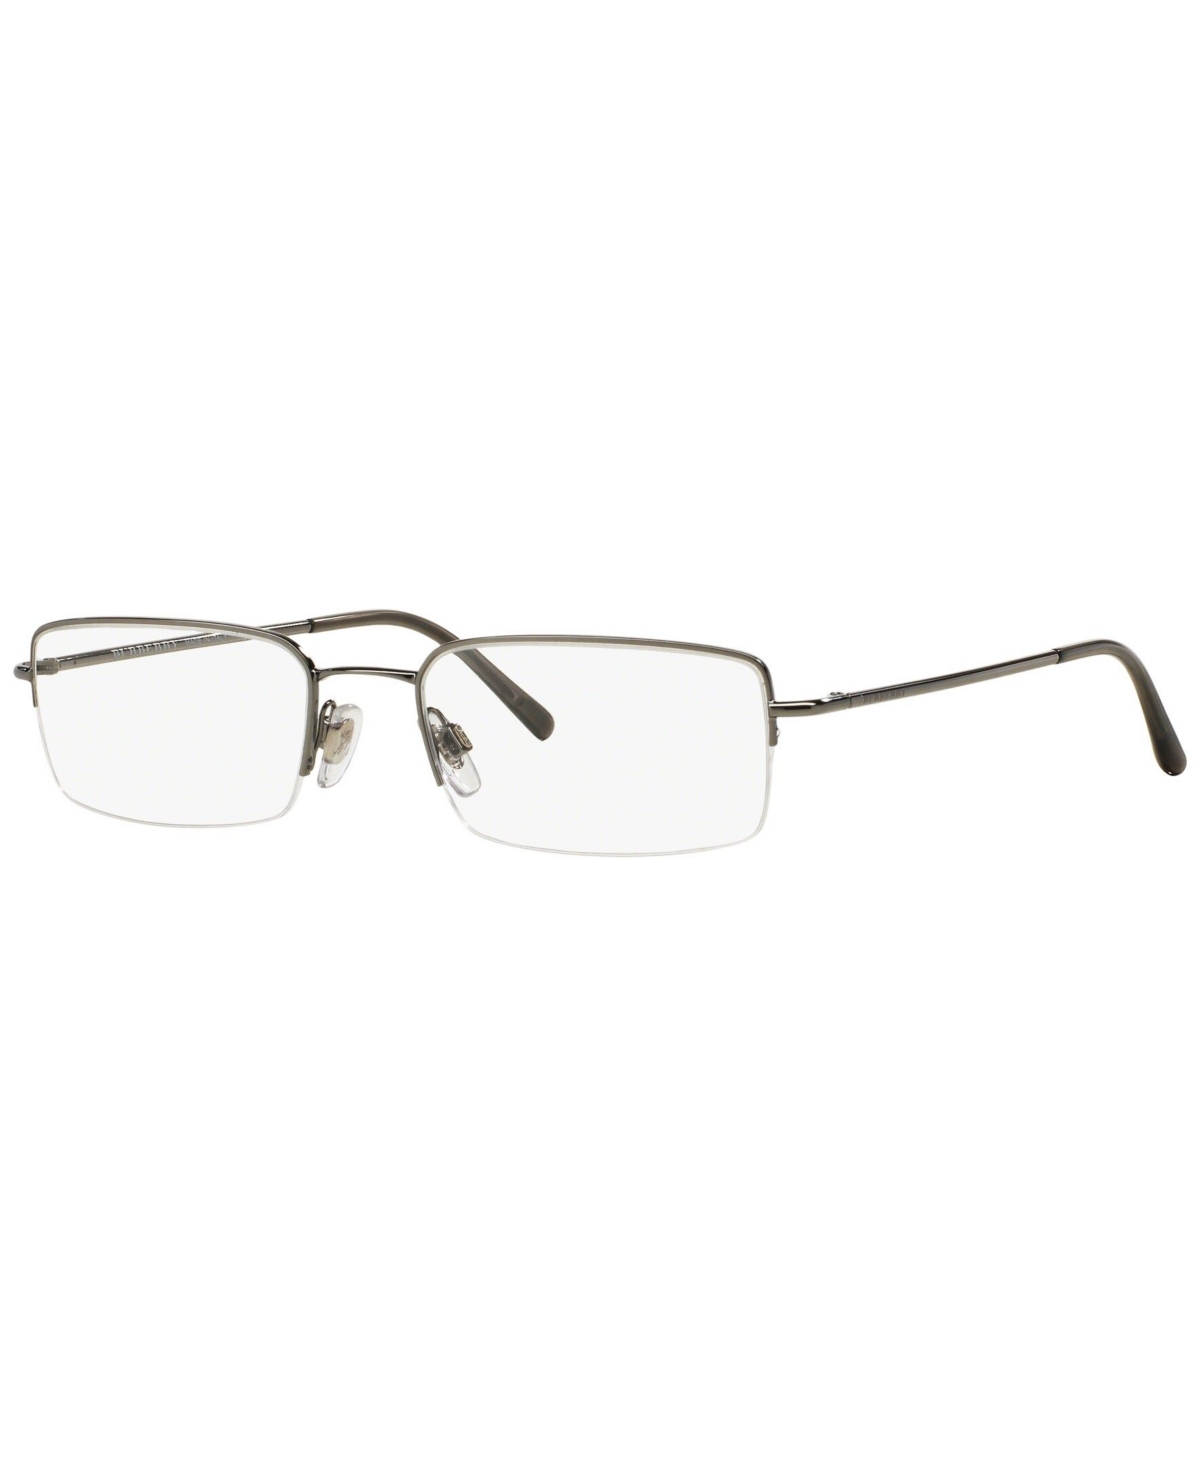 BE1068 Men's Rectangle Eyeglasses - Gunmetal